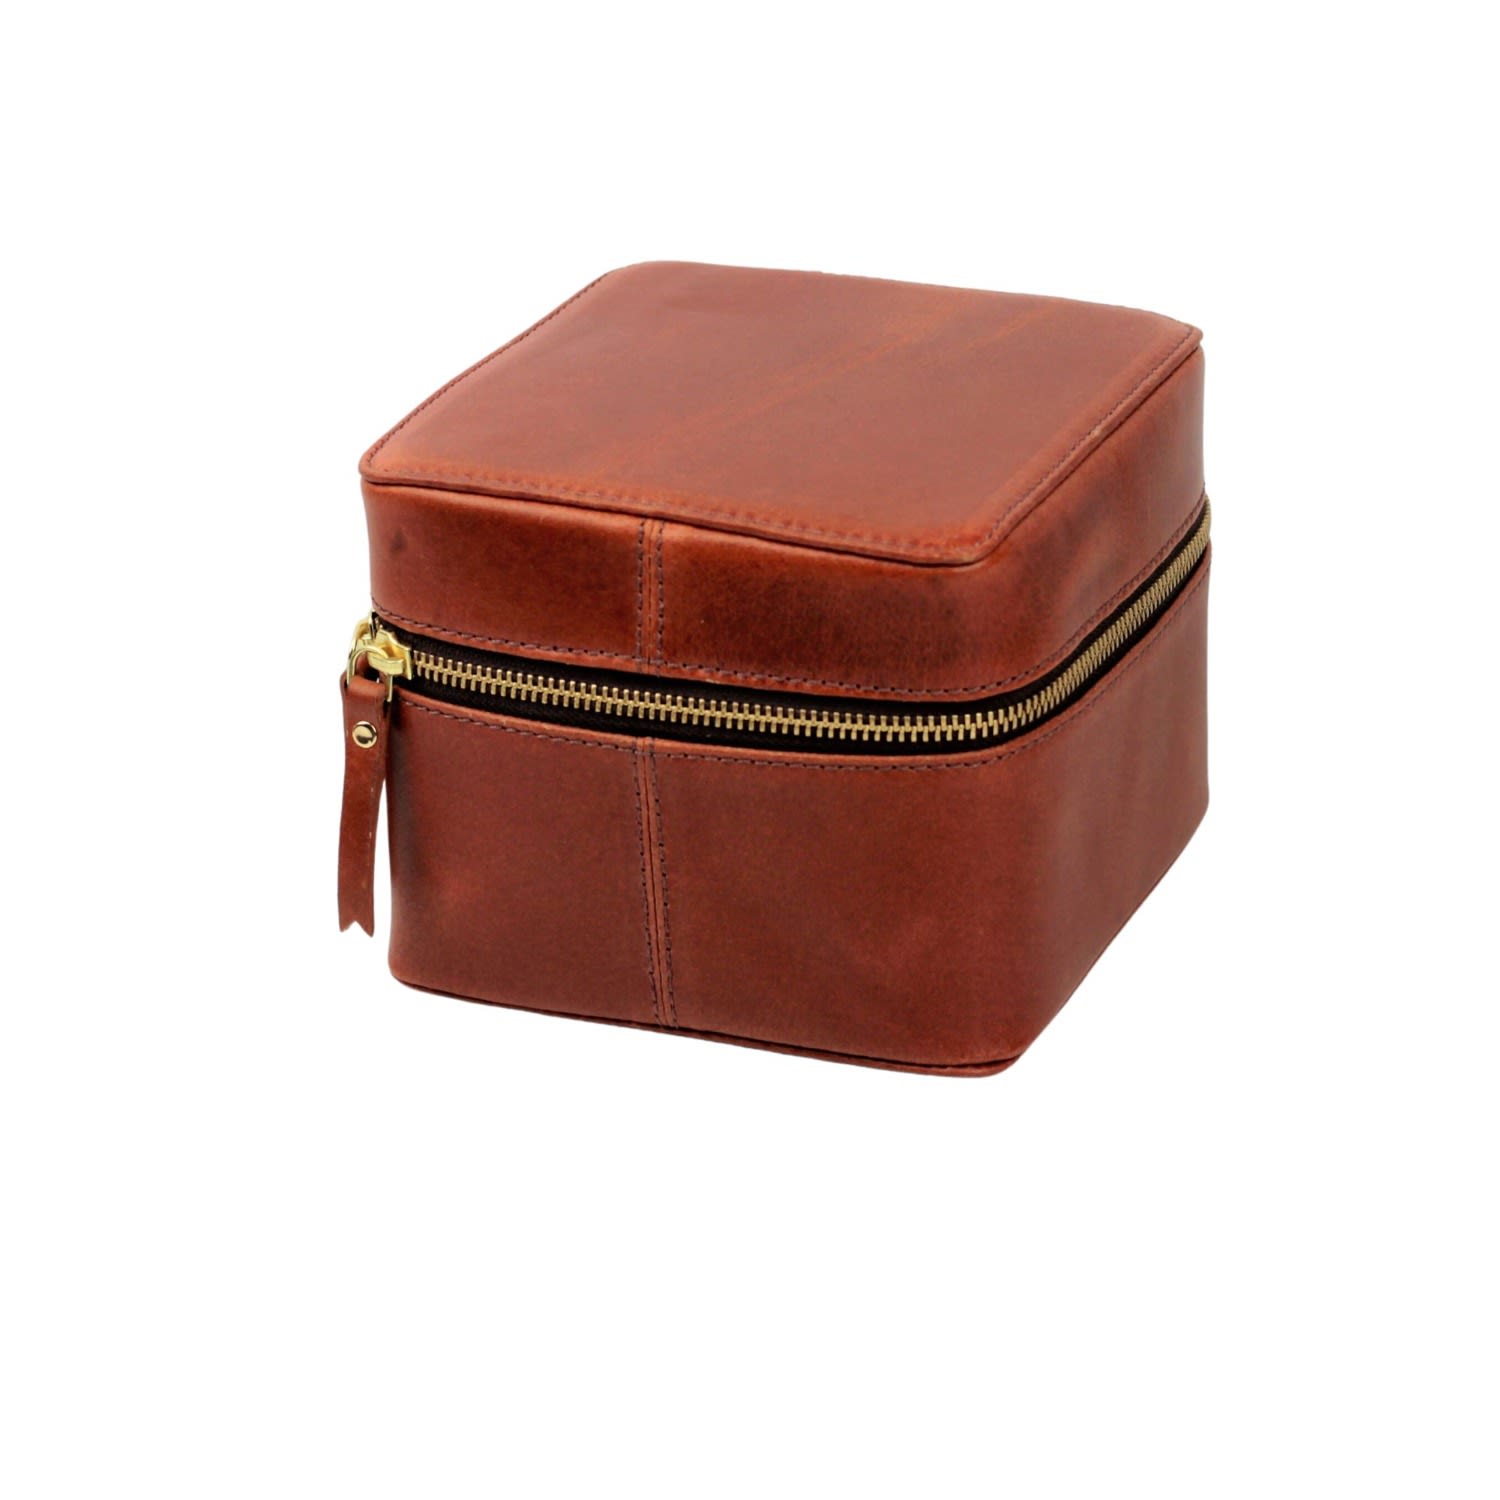 Vida Vida Brown Leather Tech Storage Box Tan